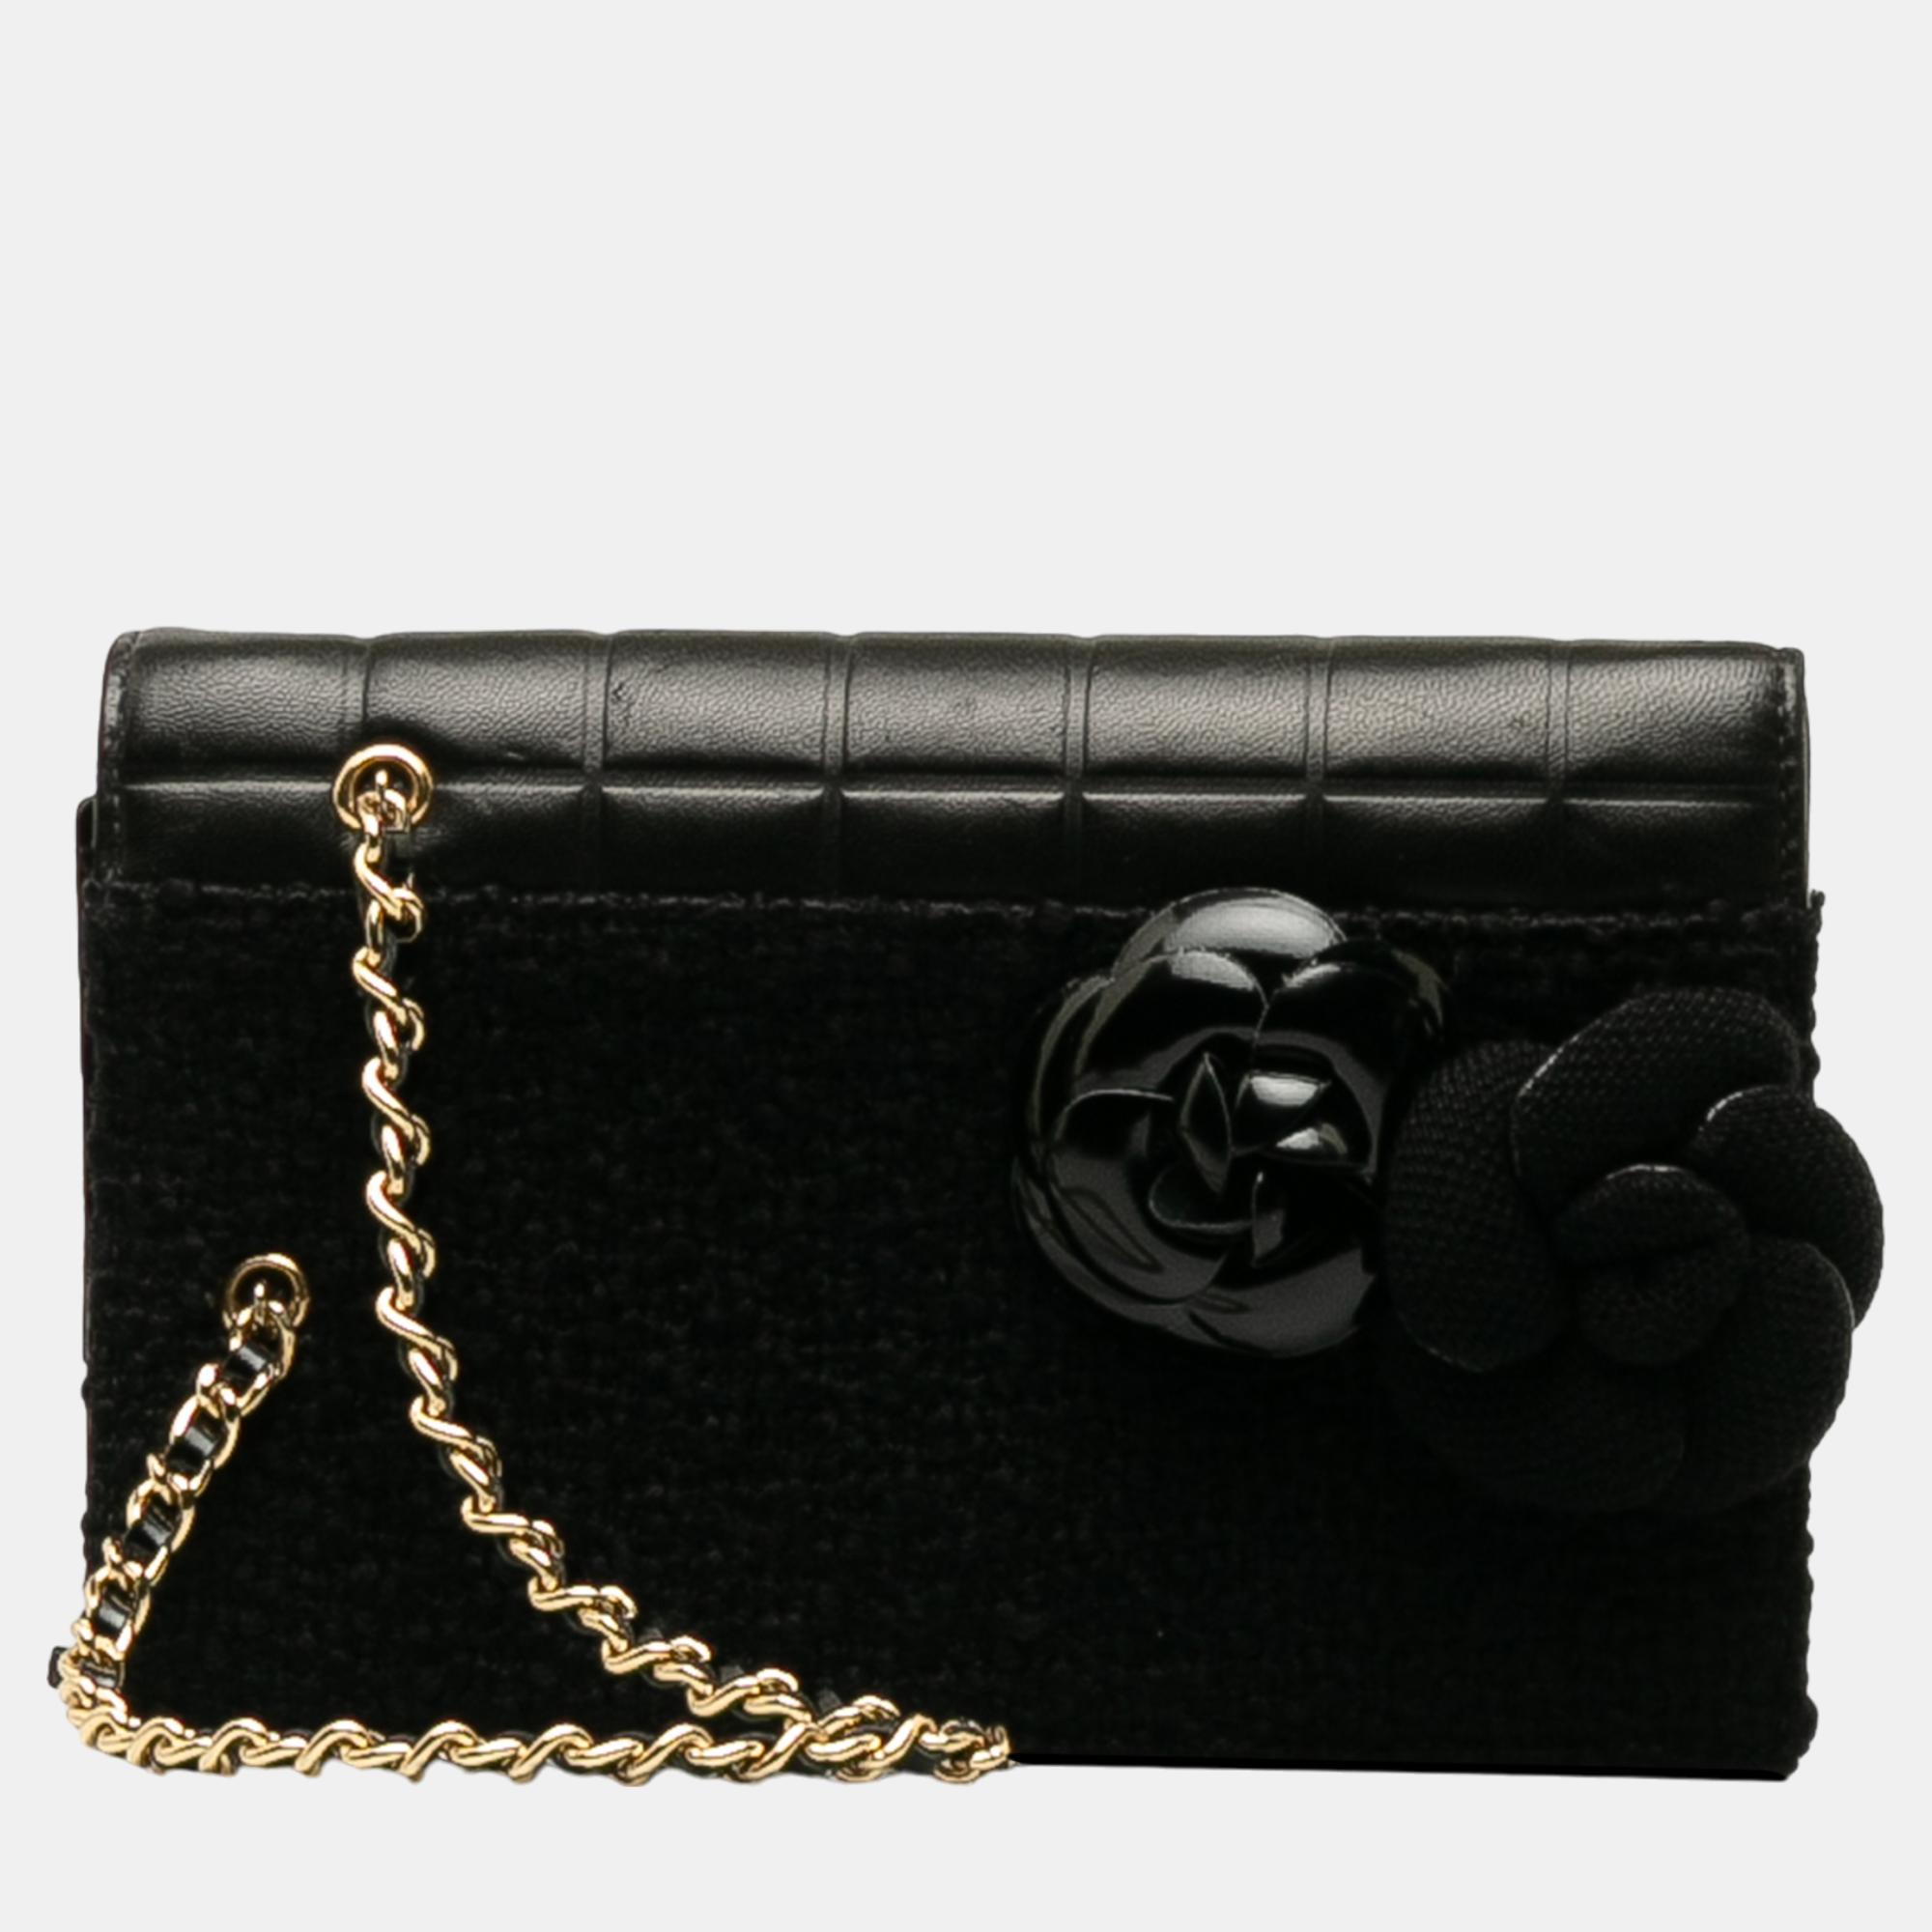 Chanel black tweed chocolate bar camellia clutch